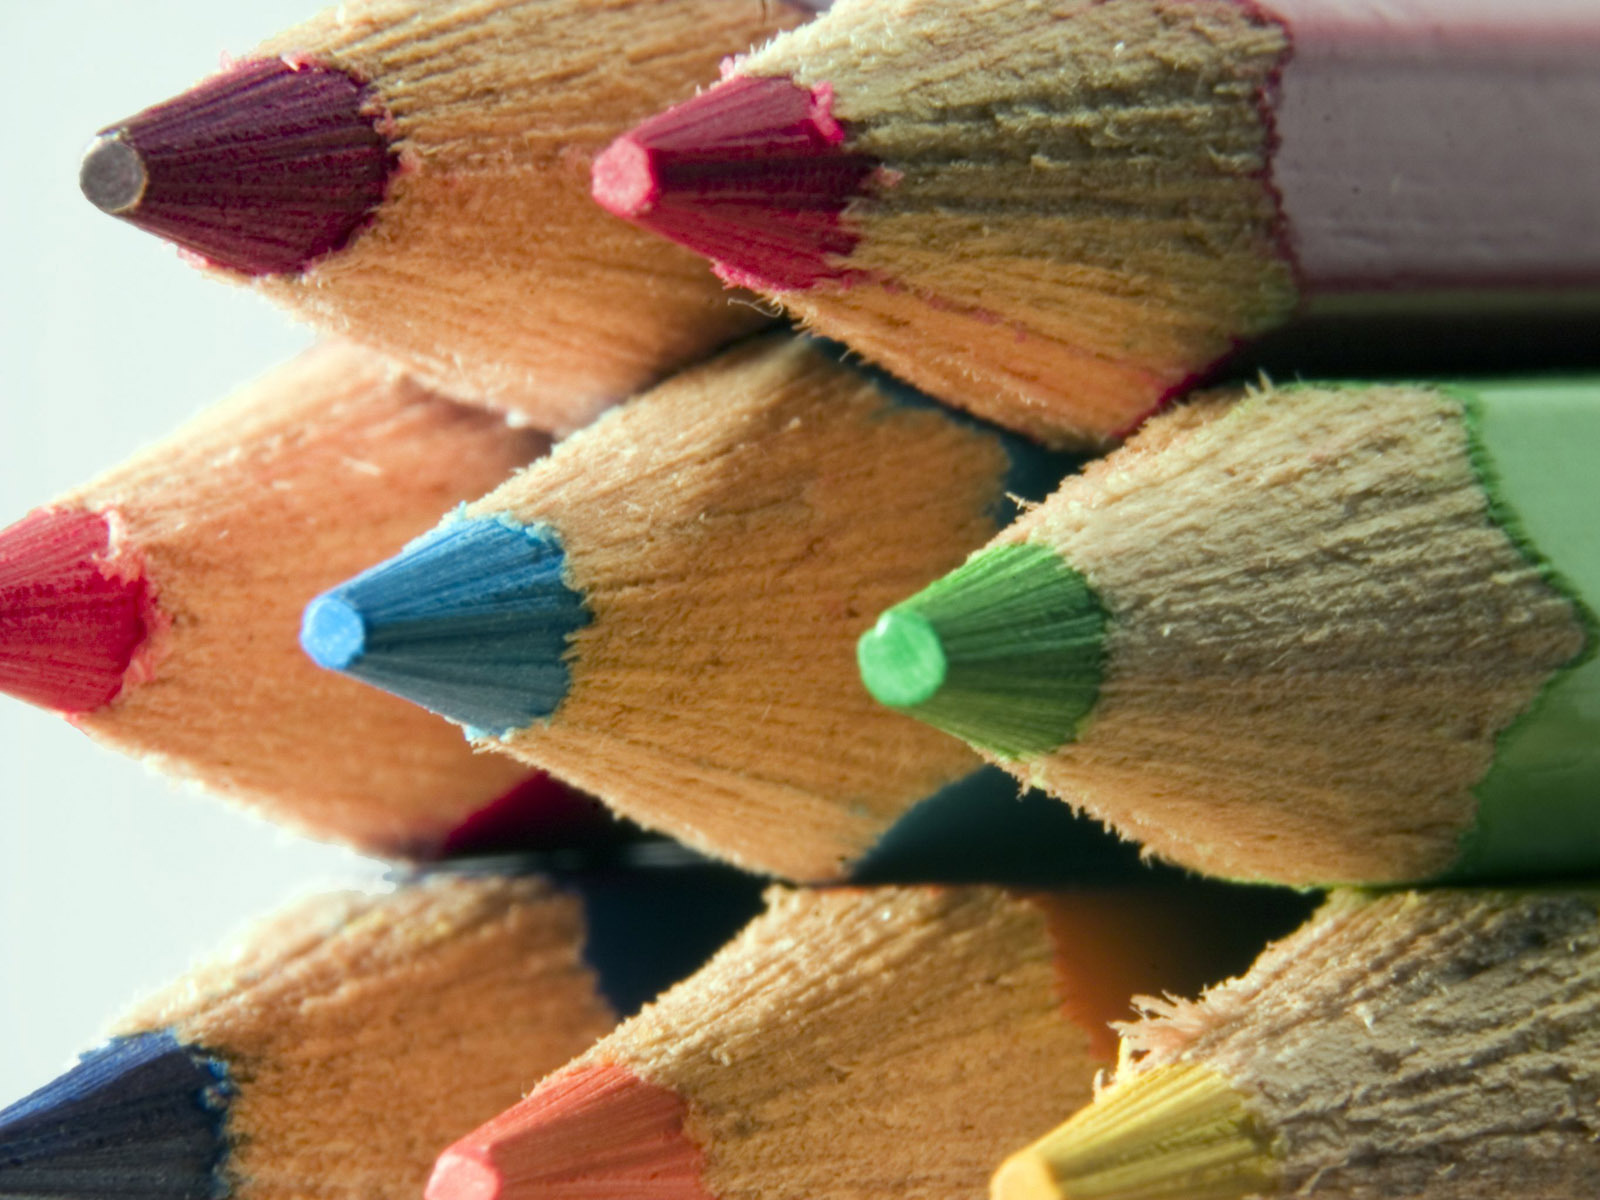 Colored Pencils Wallpaper